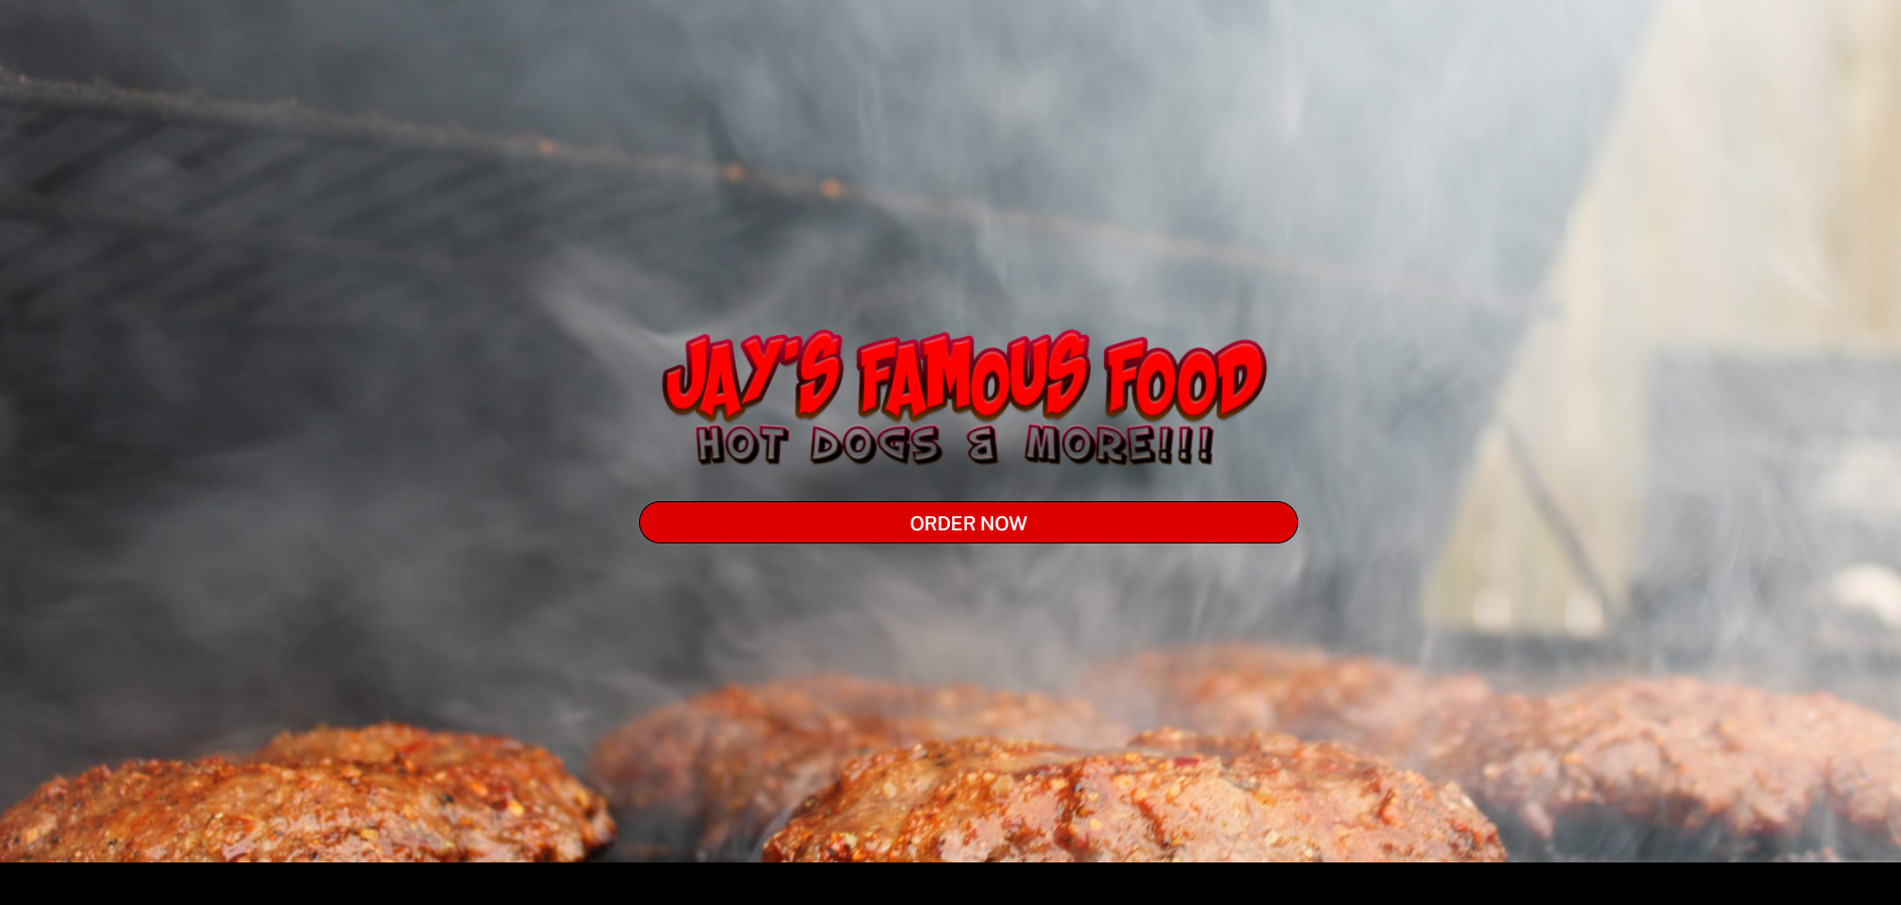 jaysfamousfood.com